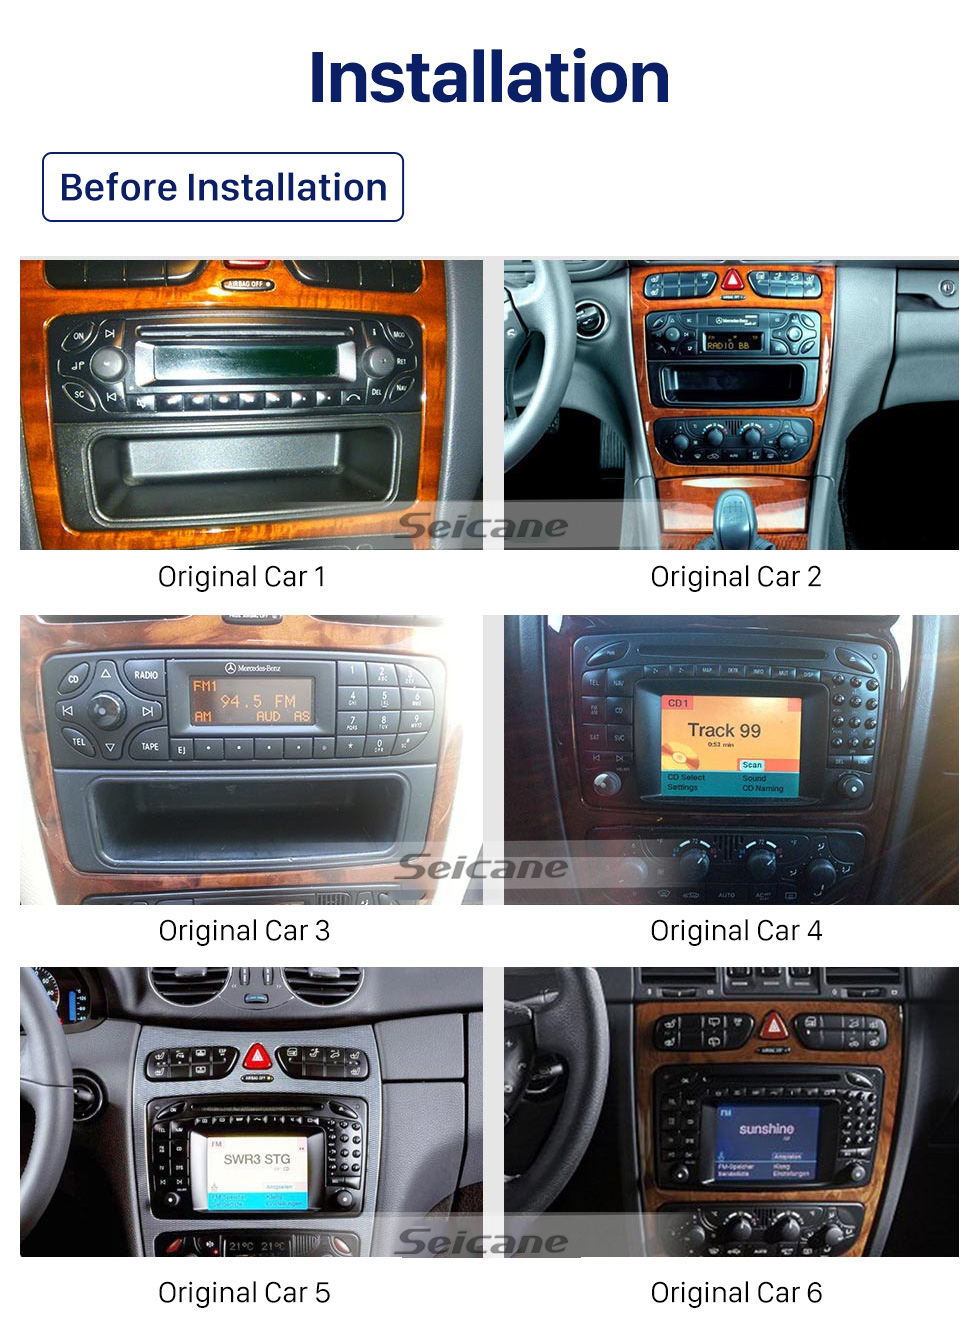 Seicane 10,1 polegadas Android 10.0 para 2002 2003 2004 Mercedes Benz C Class W203 Navegação GPS por rádio com tela sensível ao toque HD com suporte para Bluetooth Carplay DVR